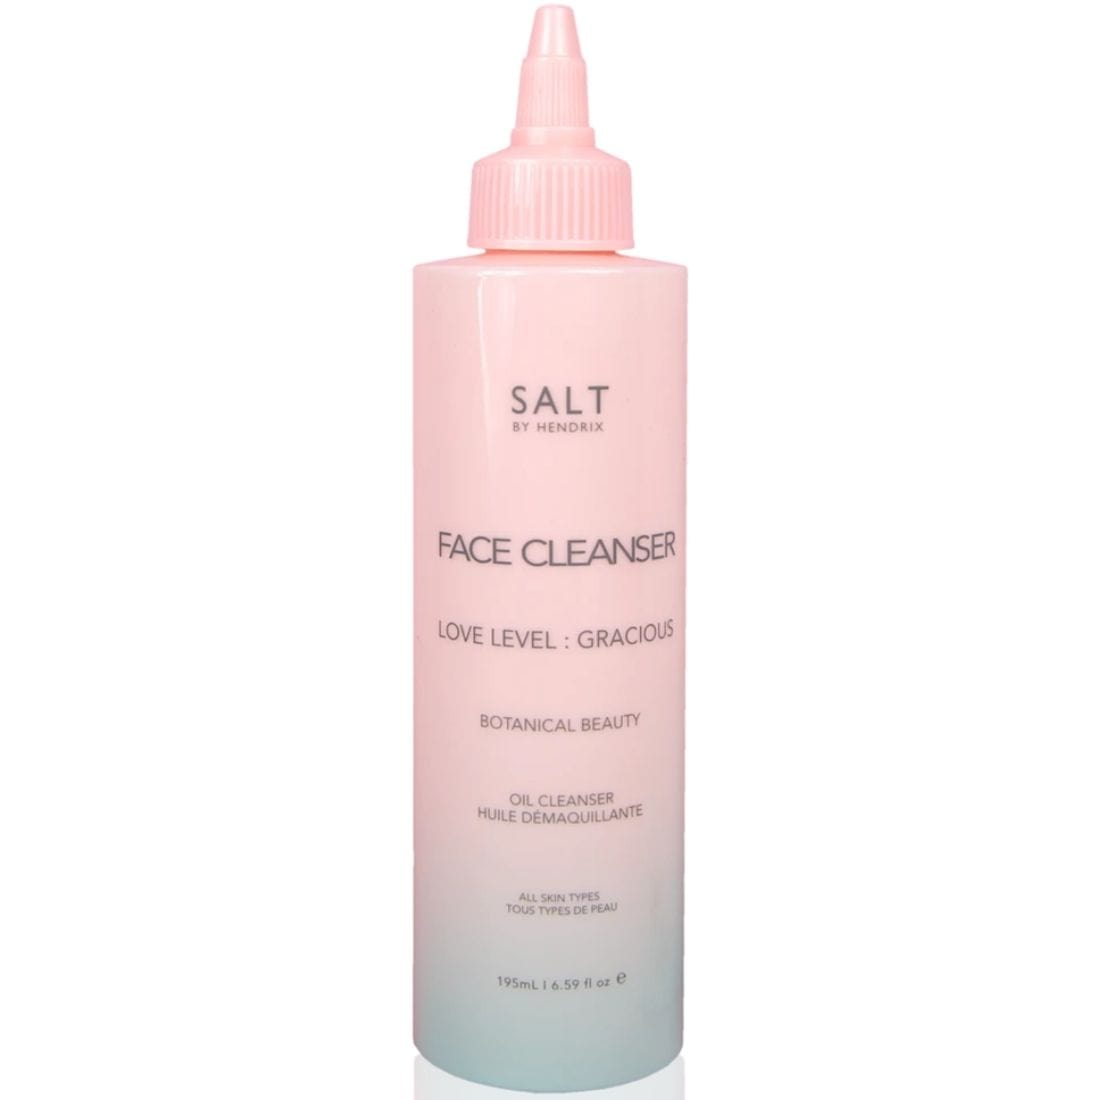 Salt By Hendrix Face Cleanser Oil Cleanser, 195 ml